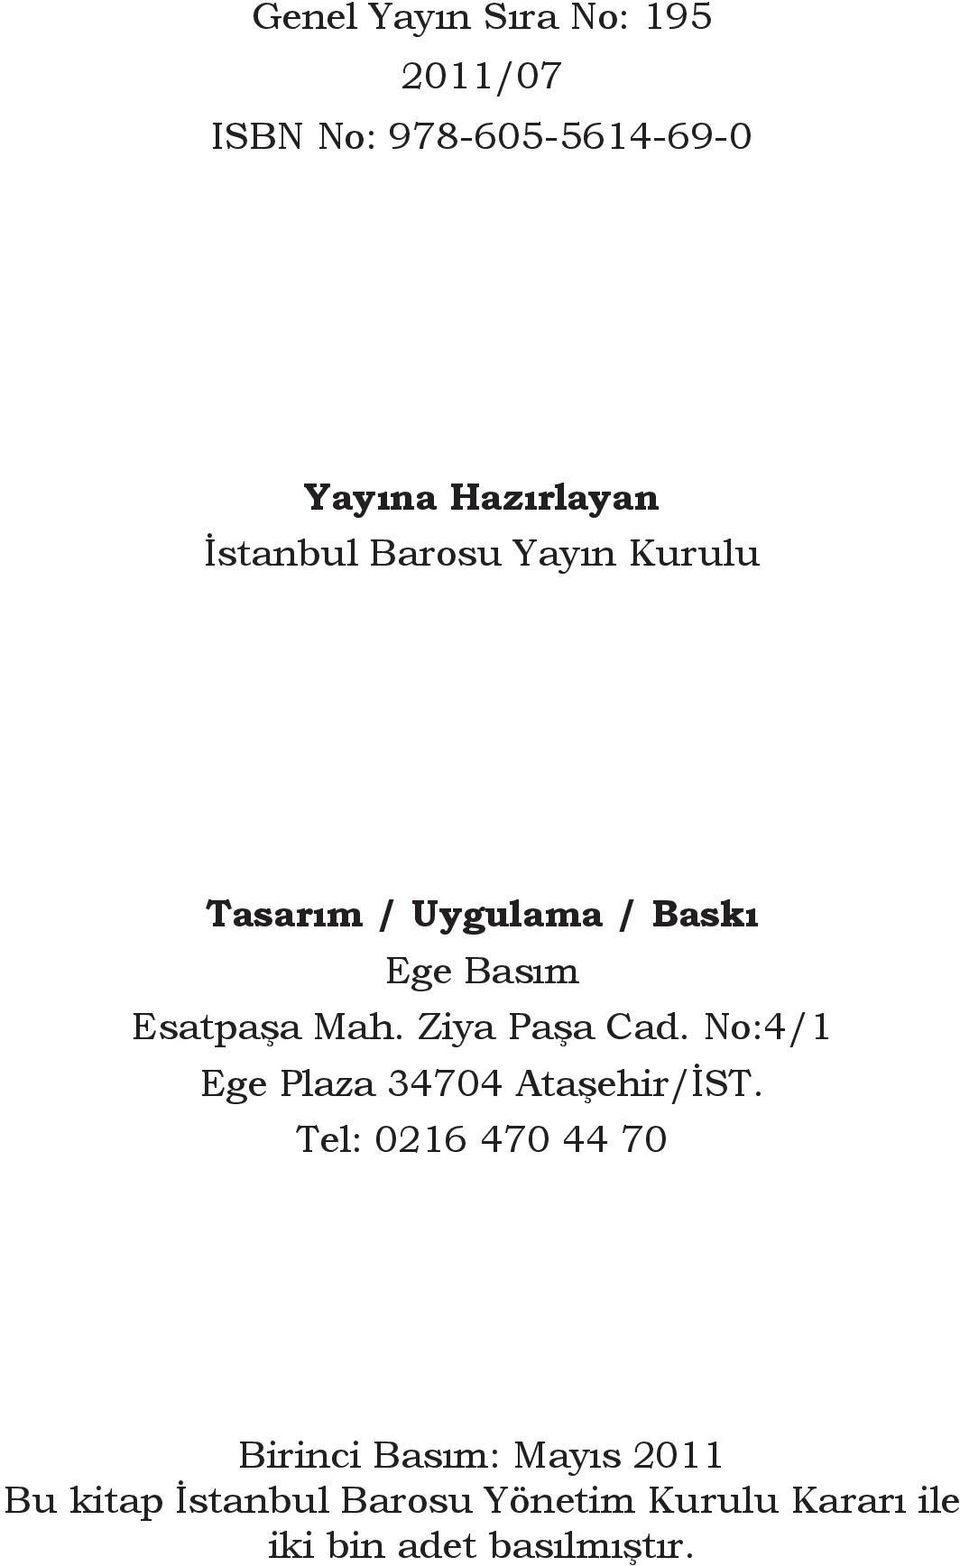 Esatpaşa Mah. Ziya Paşa Cad. No:4/1 Ege Plaza 34704 Ataşehir/İST.